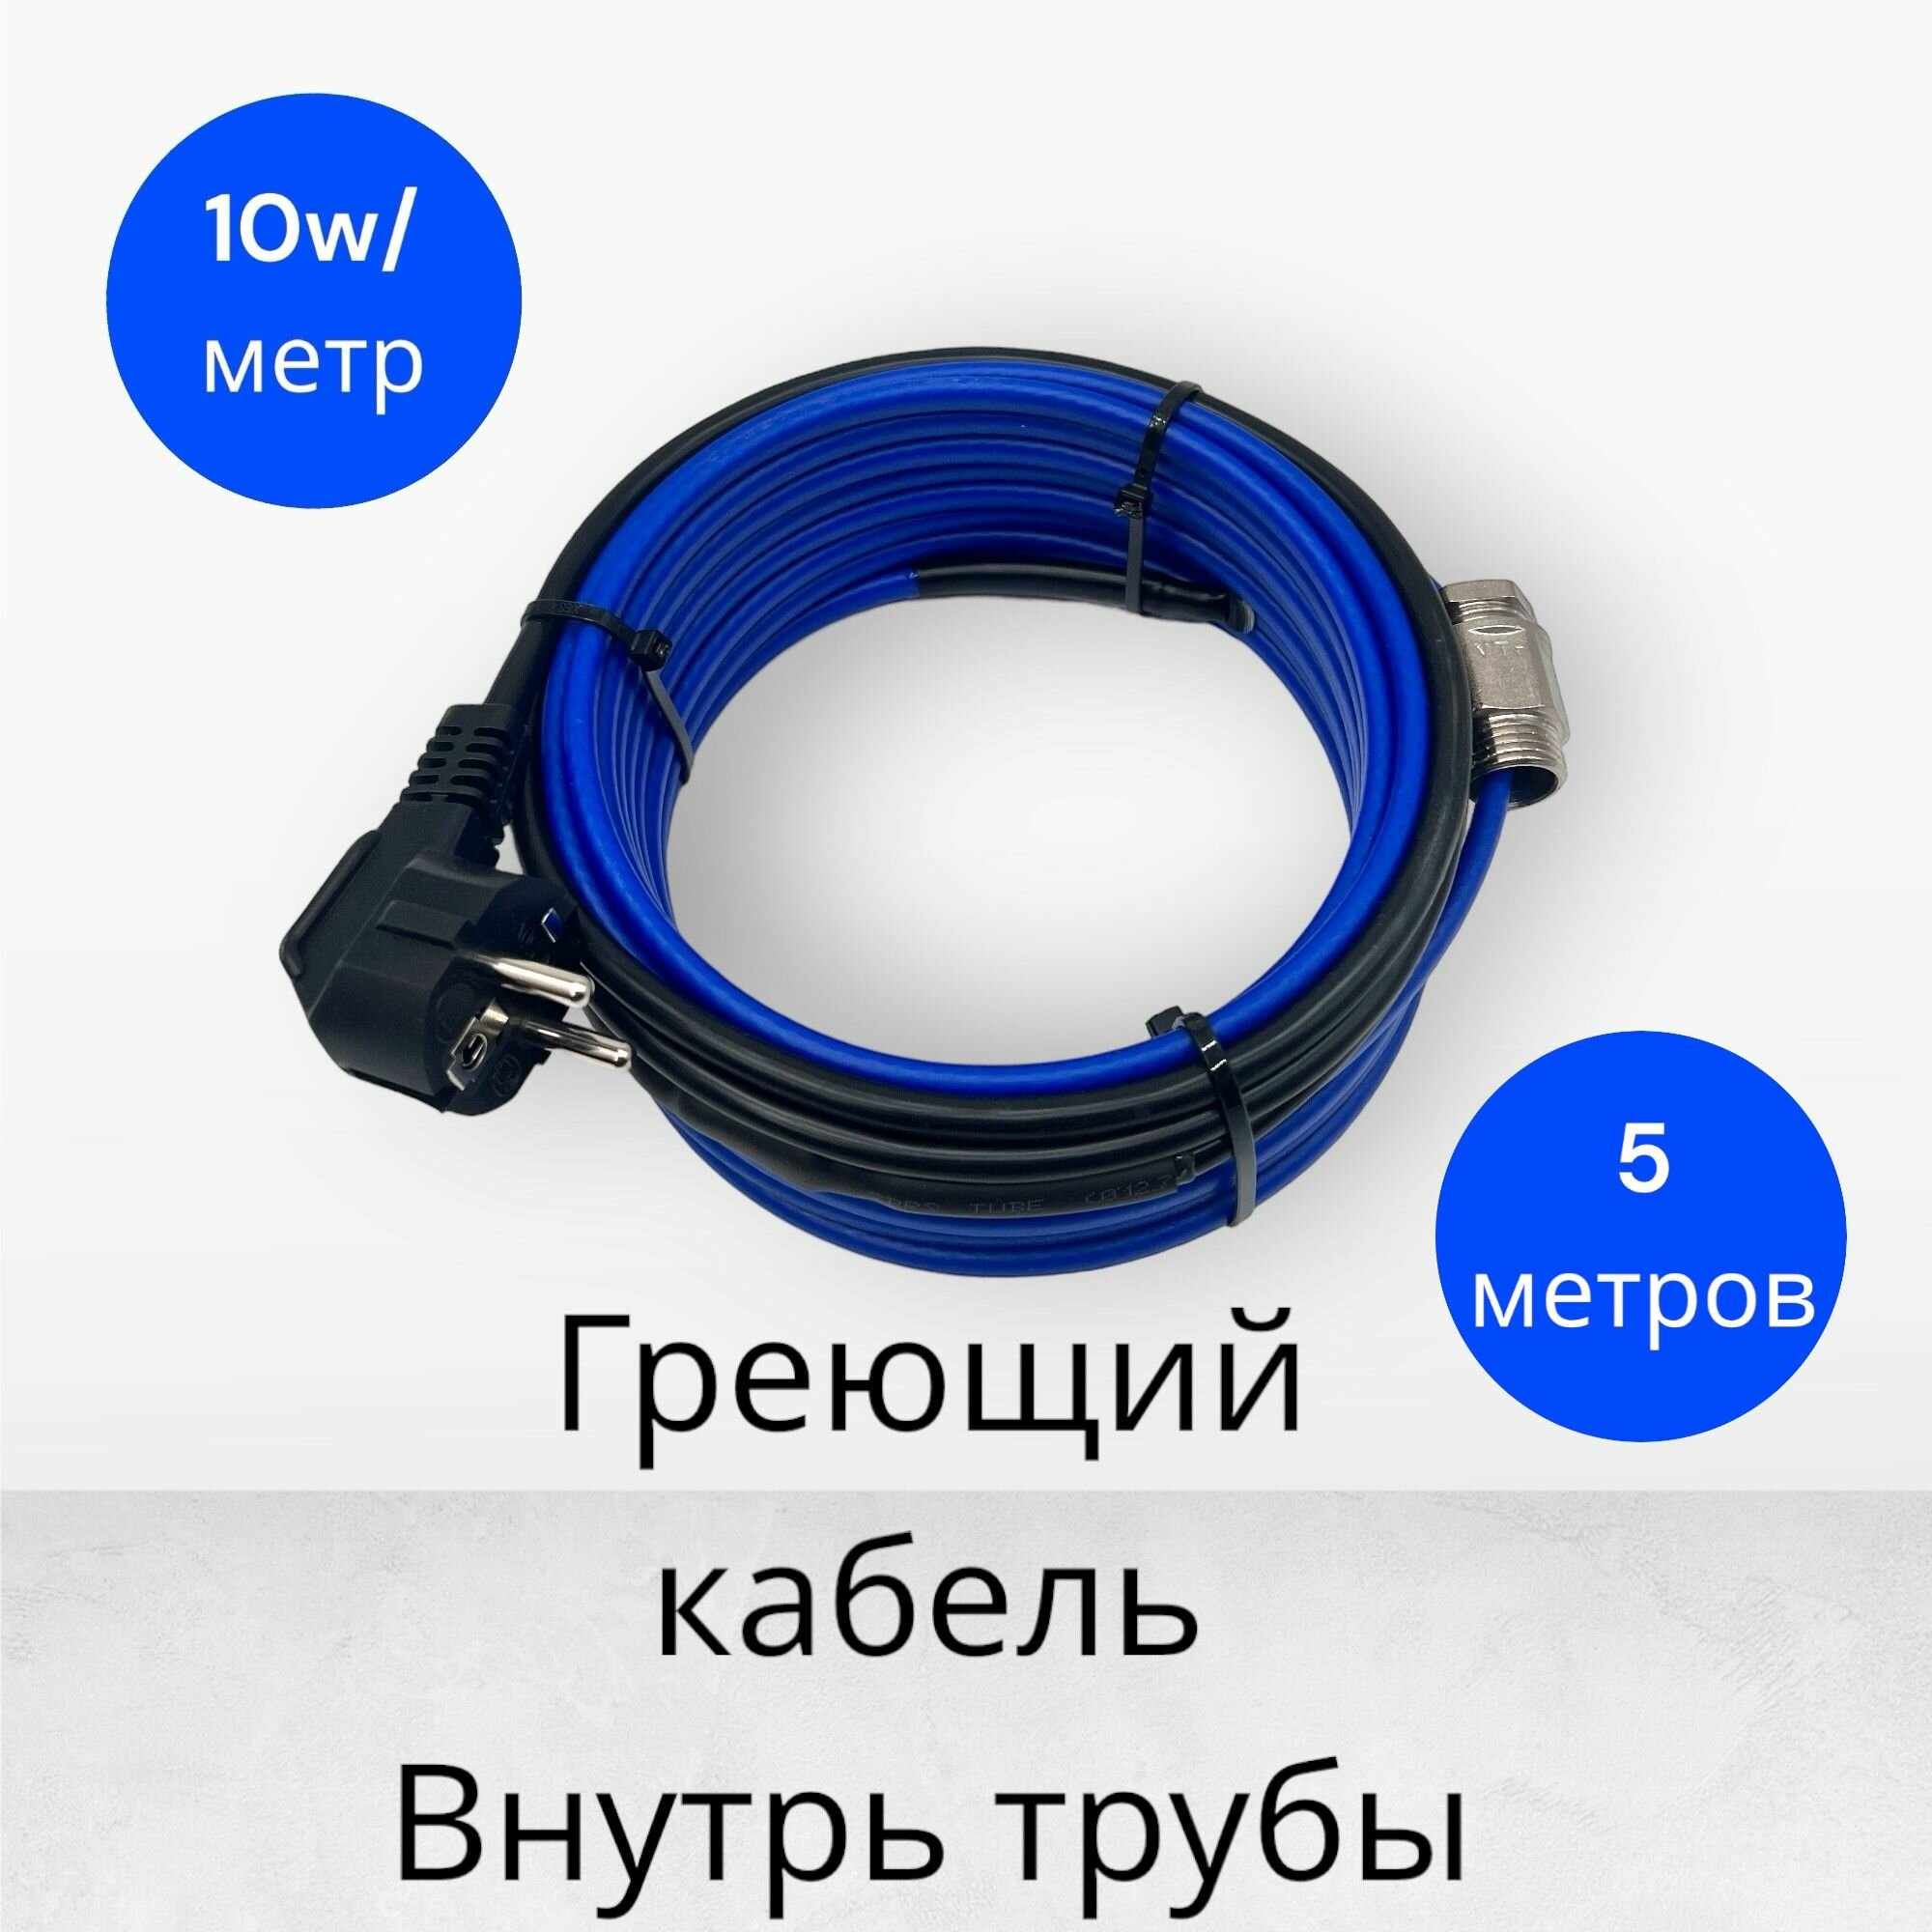 Греющий саморегулирующийся кабель внутрь трубы TM PRO - 10Вт/м (5м. комплект)